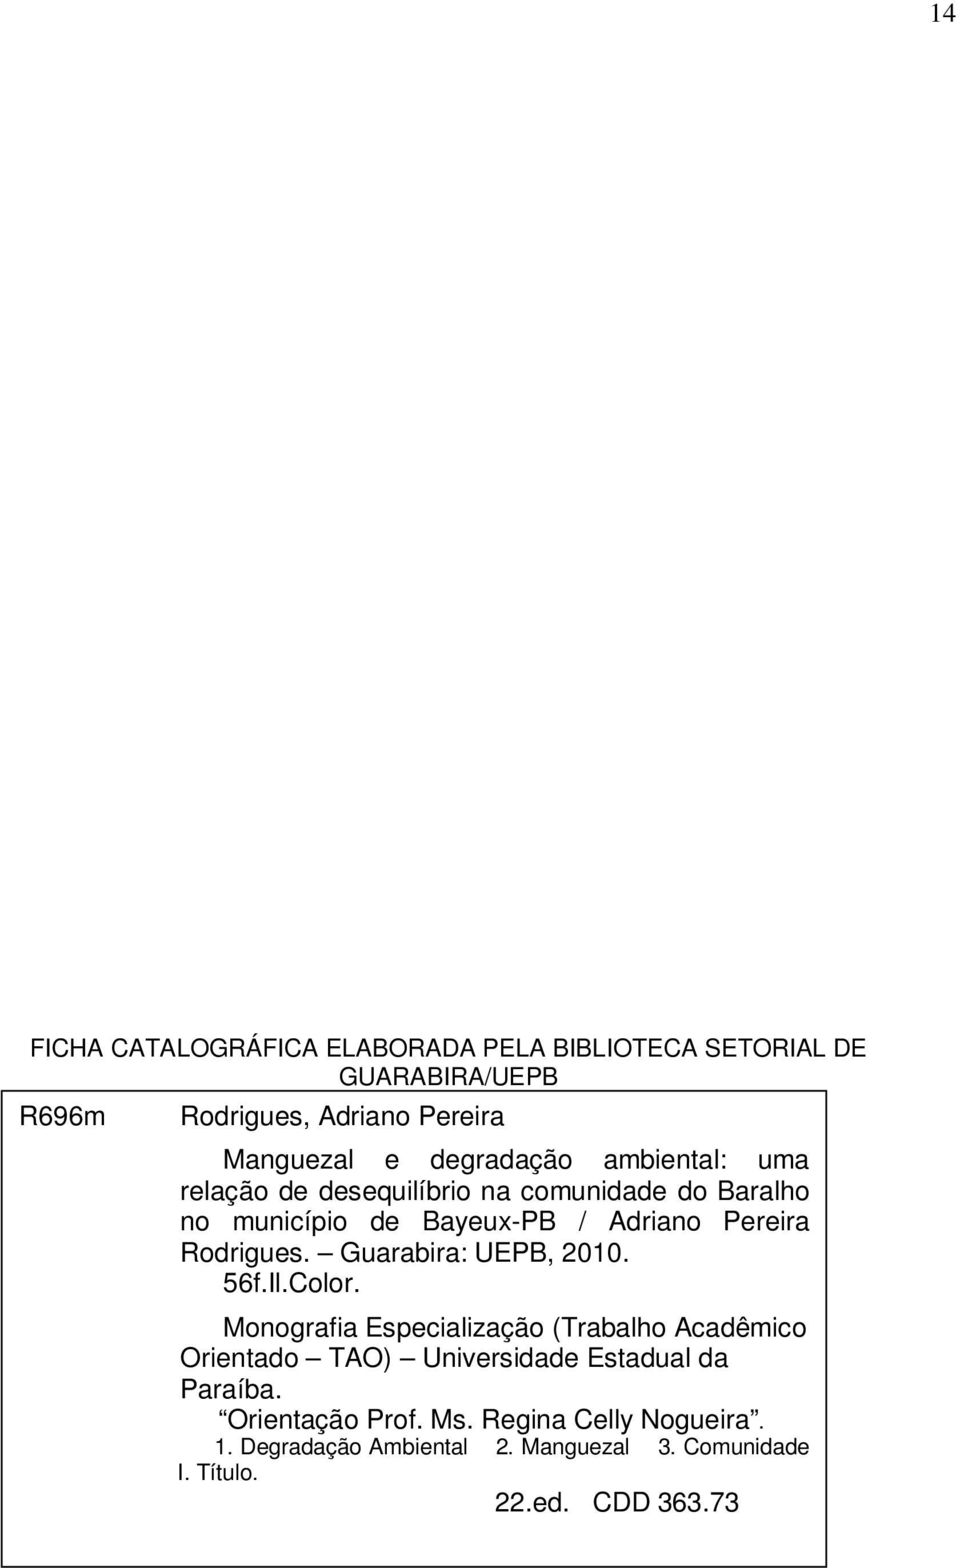 Guarabira: UEPB, 2010. 56f.Il.Color. Monografia Especialização (Trabalho Acadêmico Orientado TAO) Universidade Estadual da Paraíba.